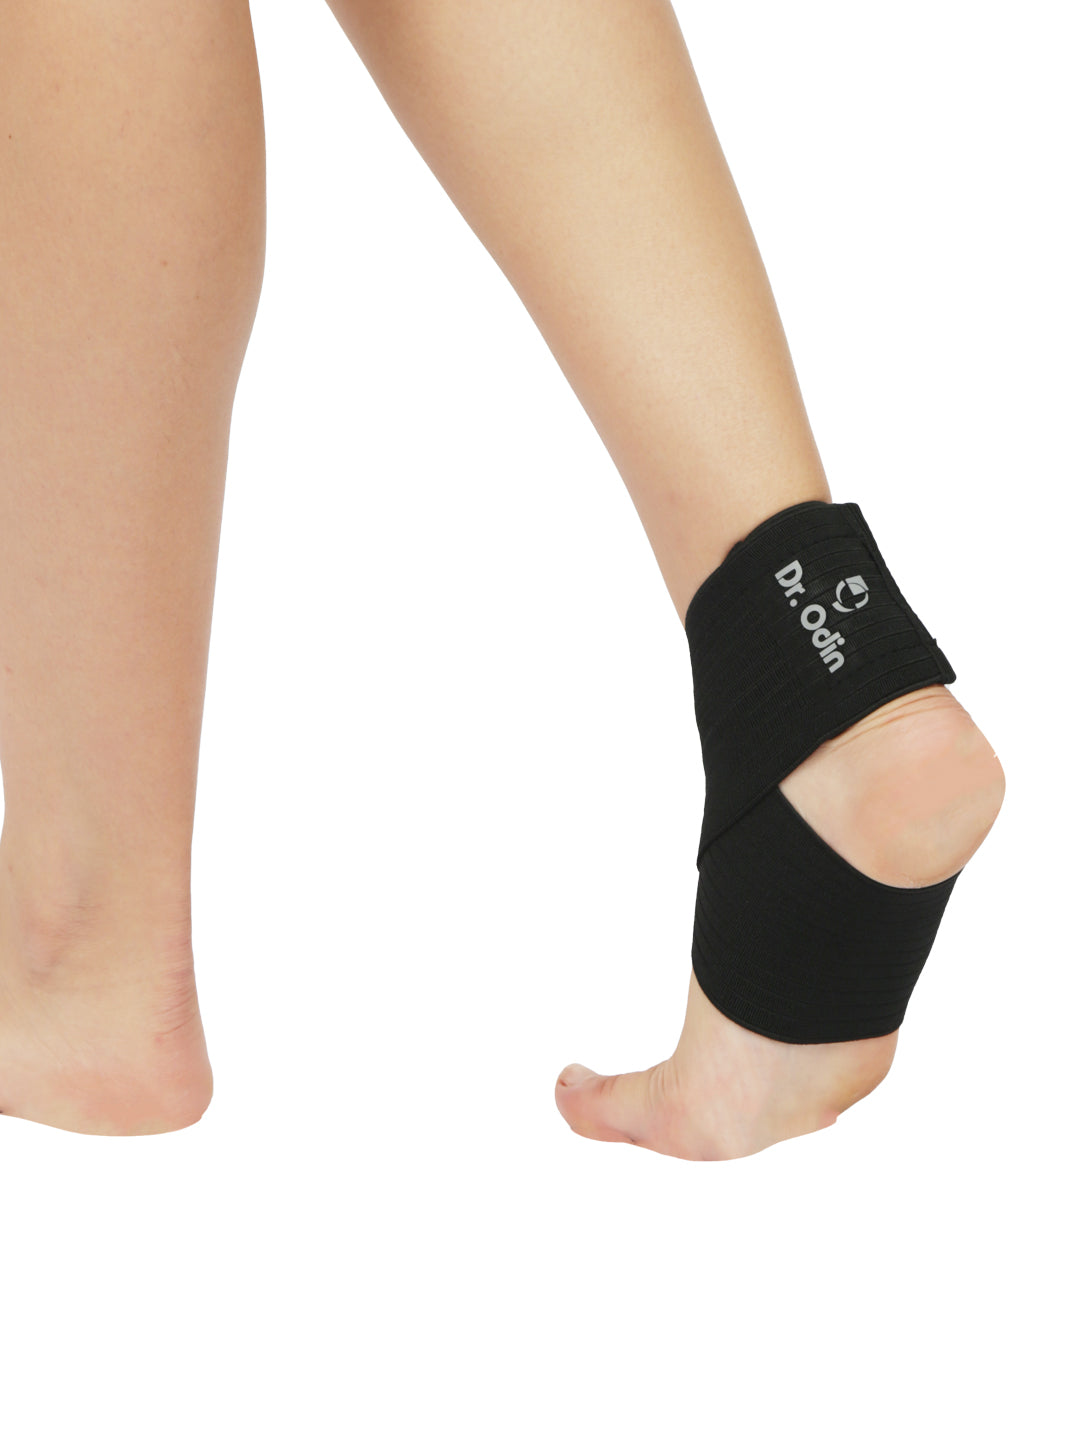 Ankle & Foot Binder